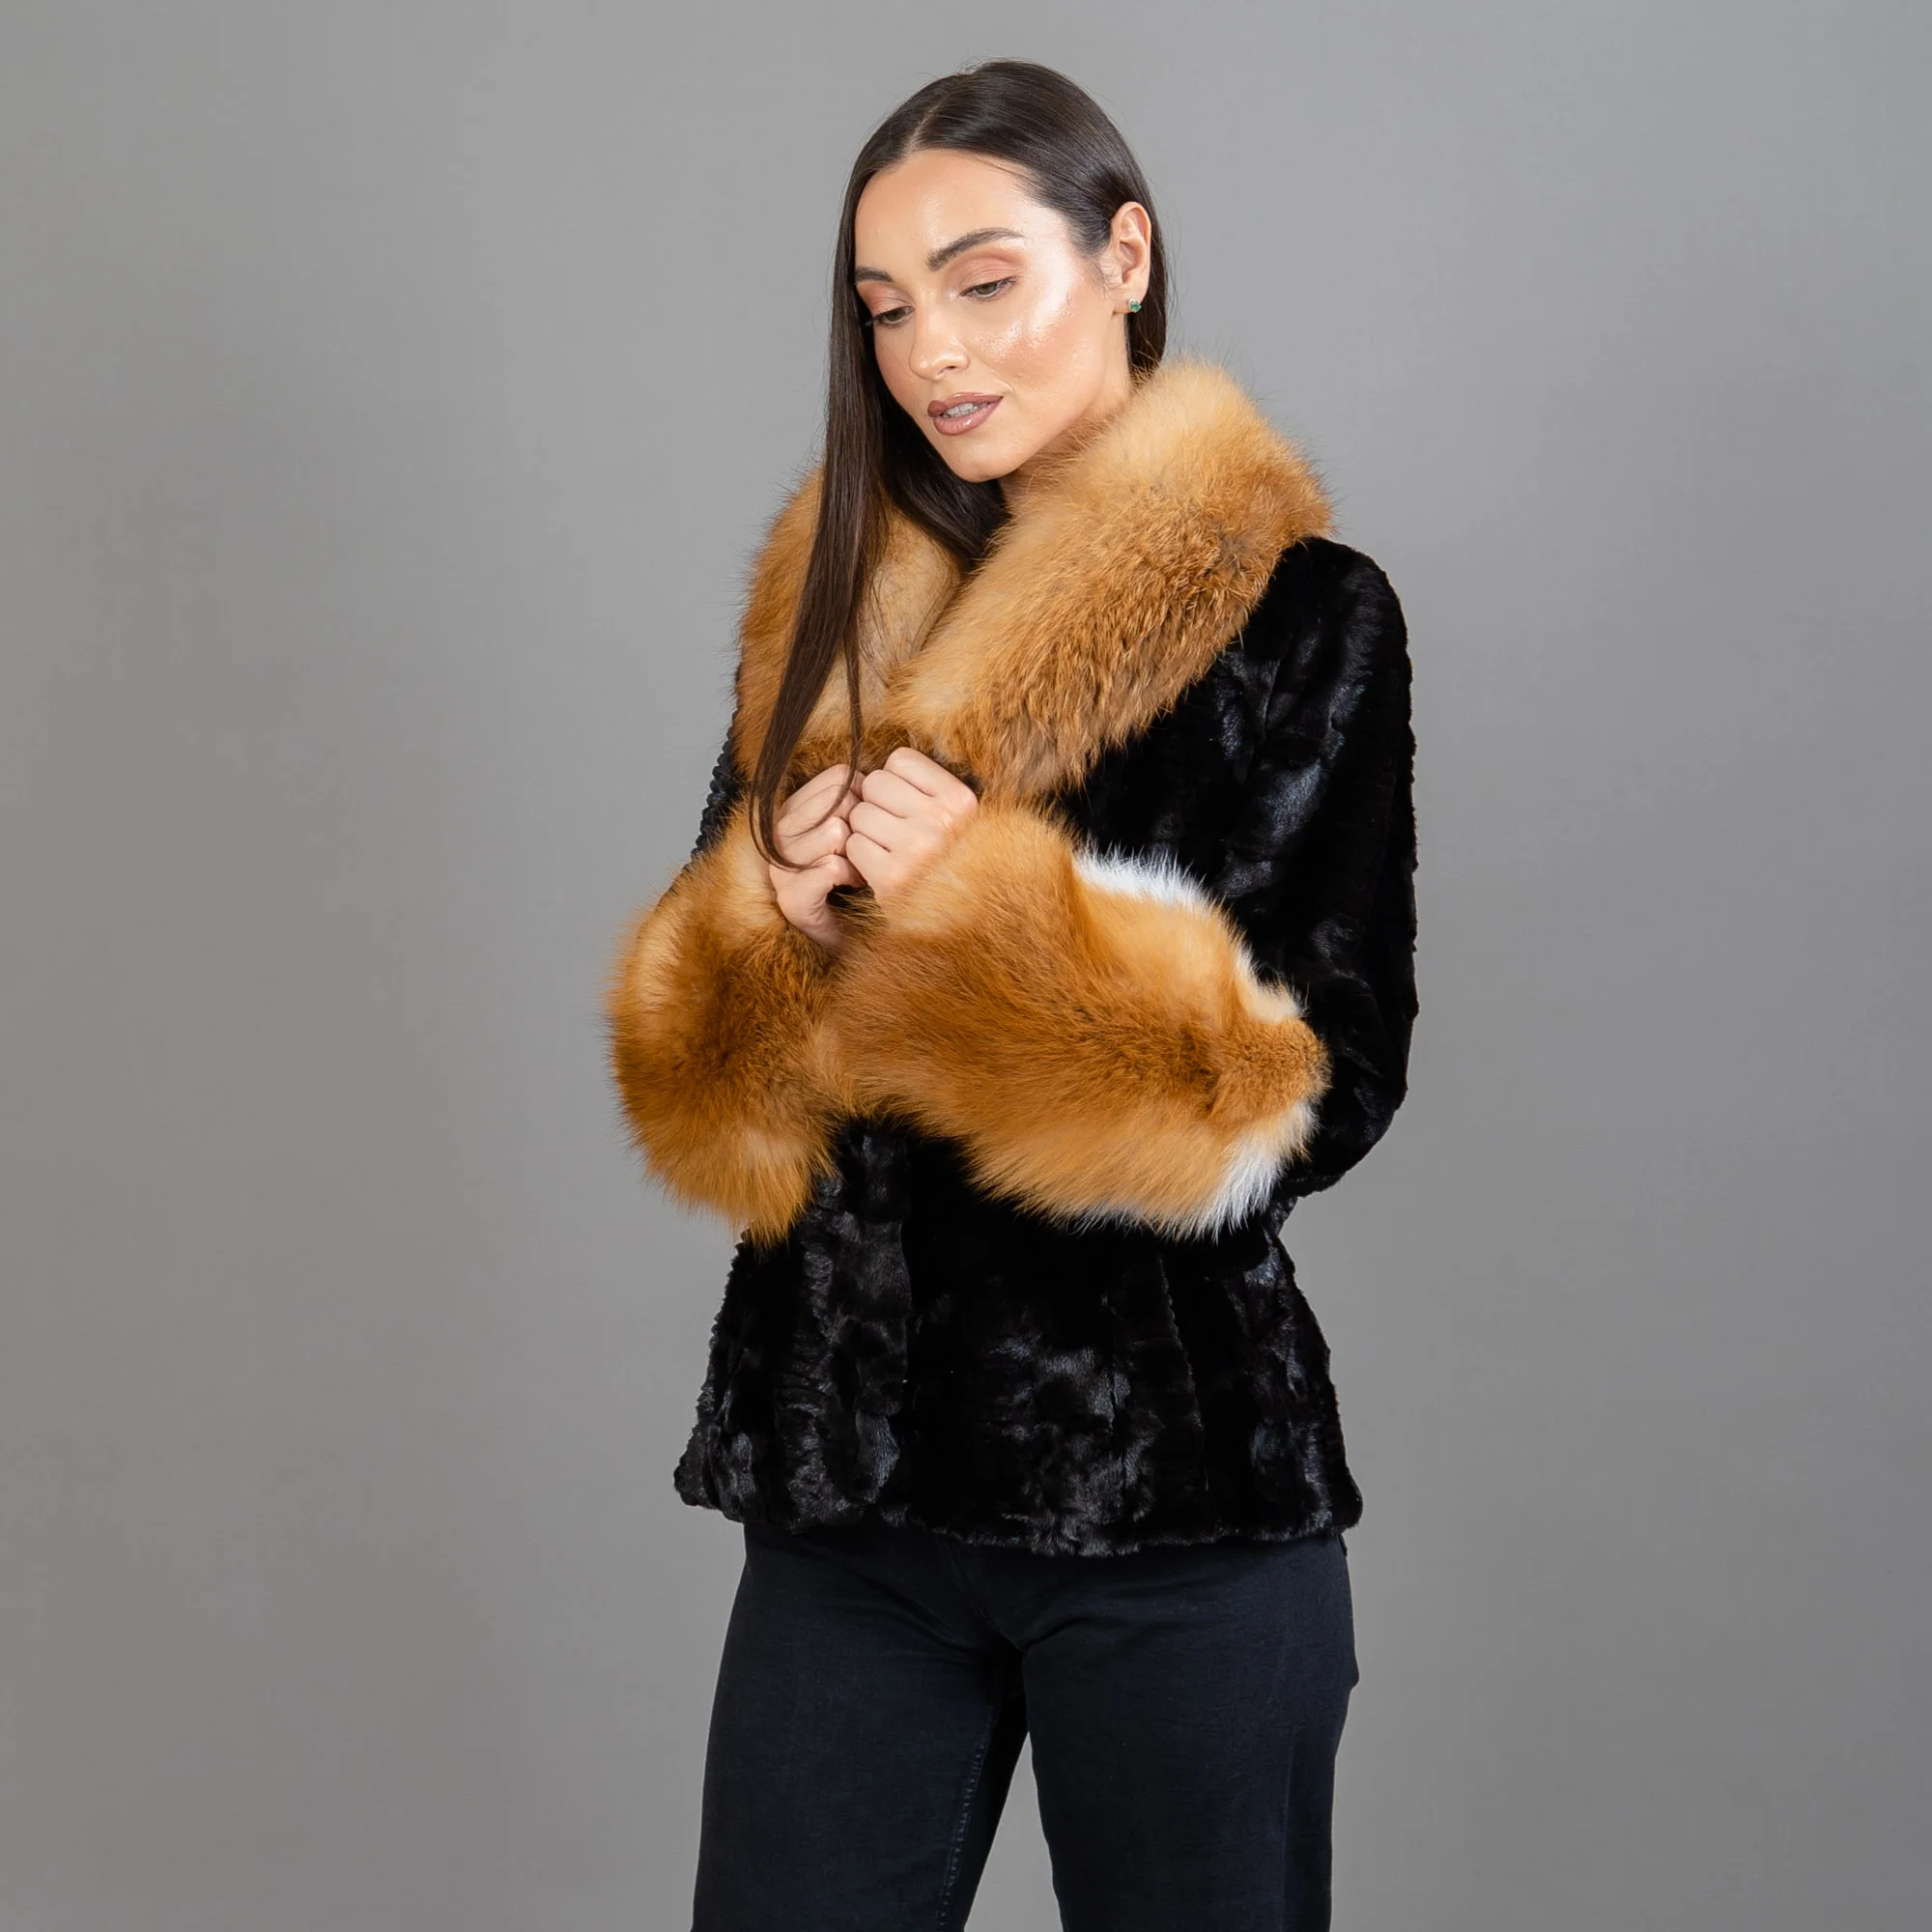 Black mink fur jacket with red fox fur details